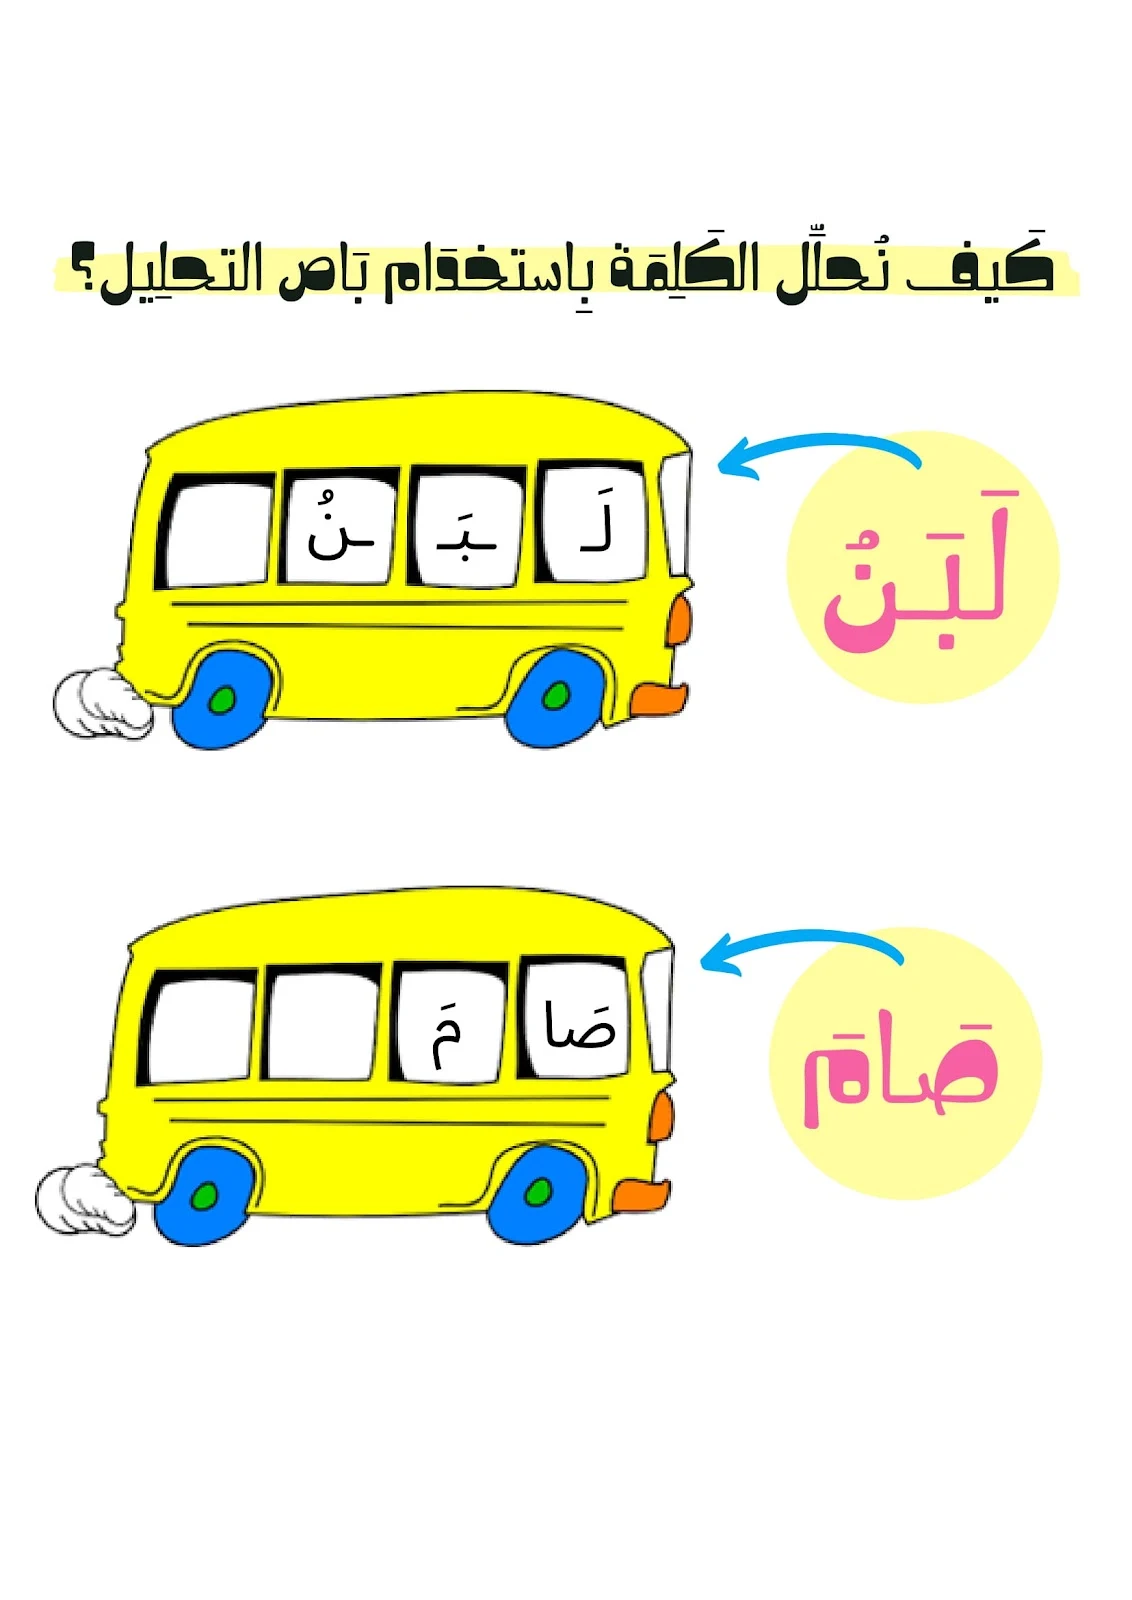 تحليل الكلمات الى مقاطع صوتية في اللغة العربية تحميل pdf